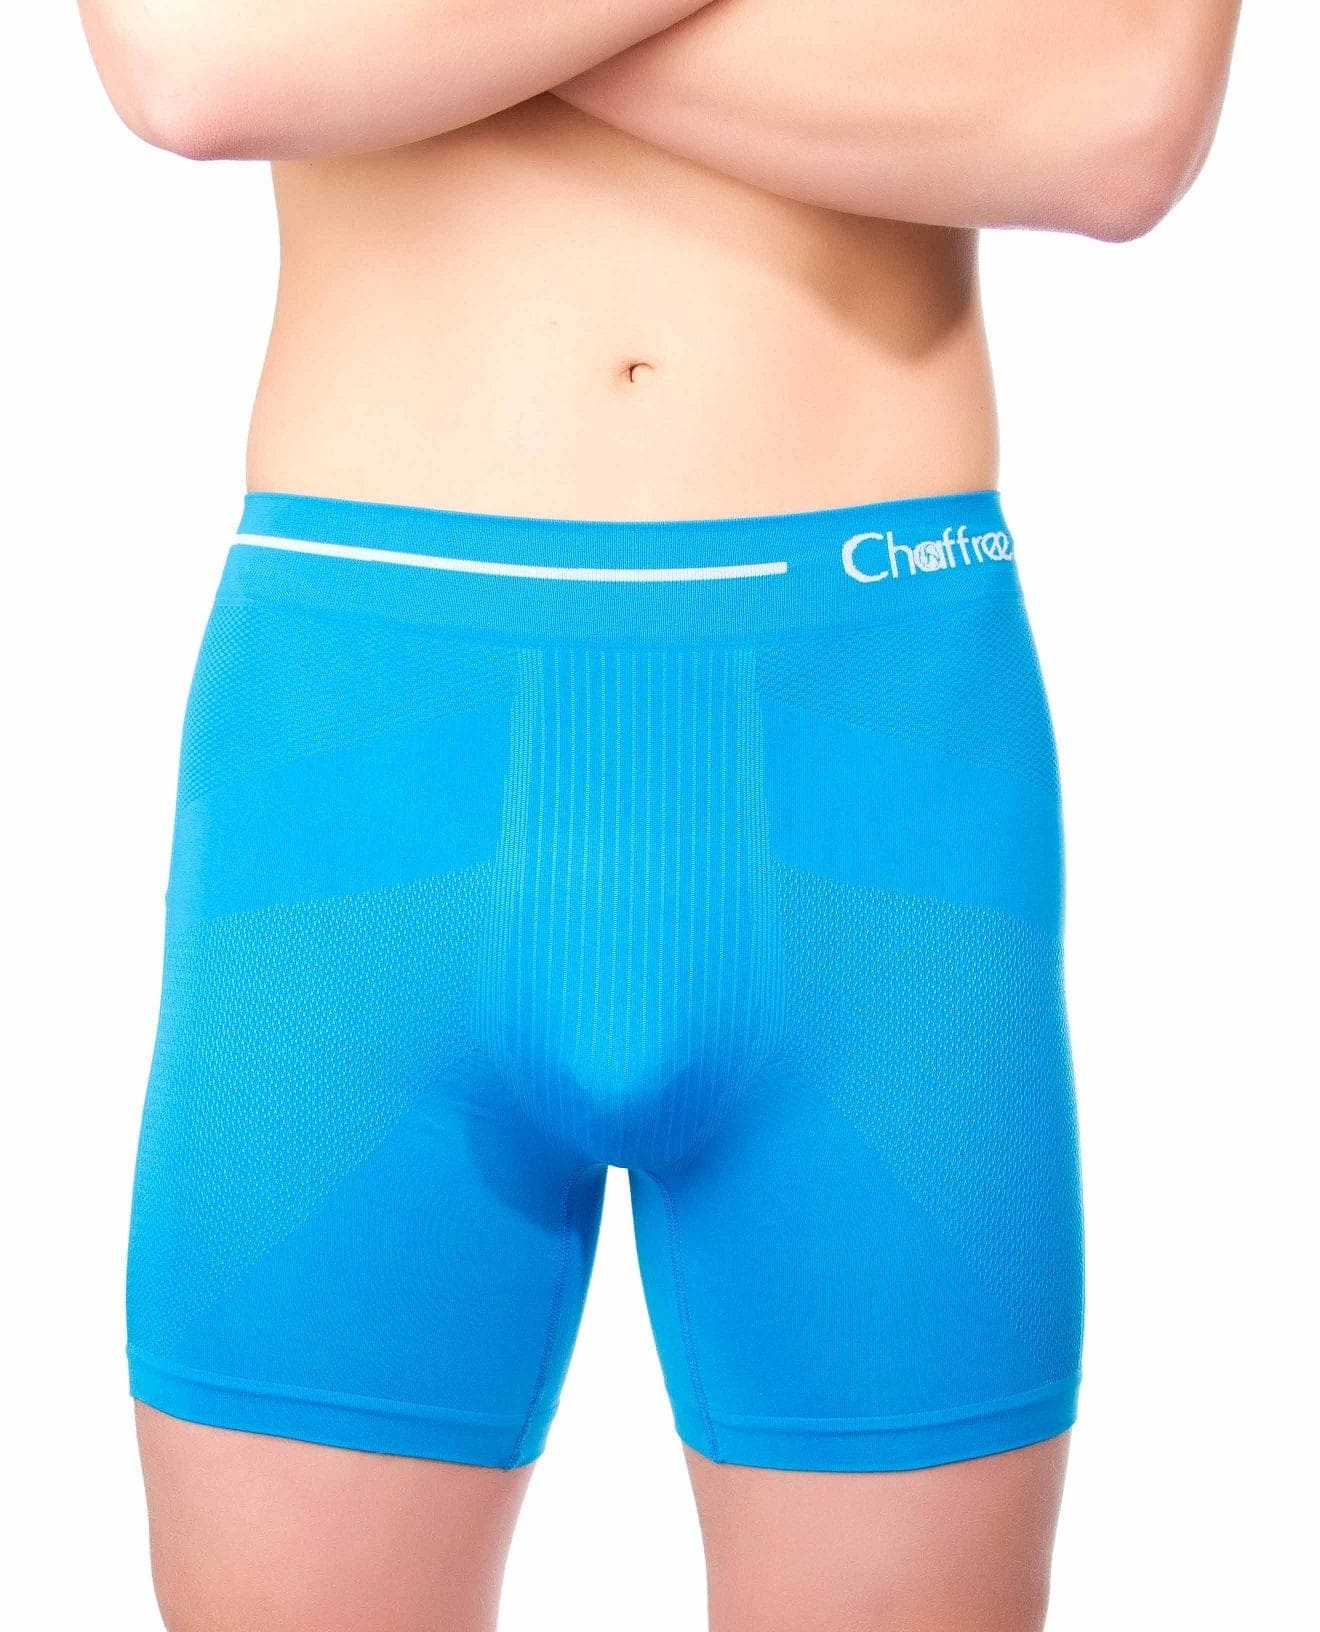 The best kind of underwear to wear under men's leggings — Extra Alexx